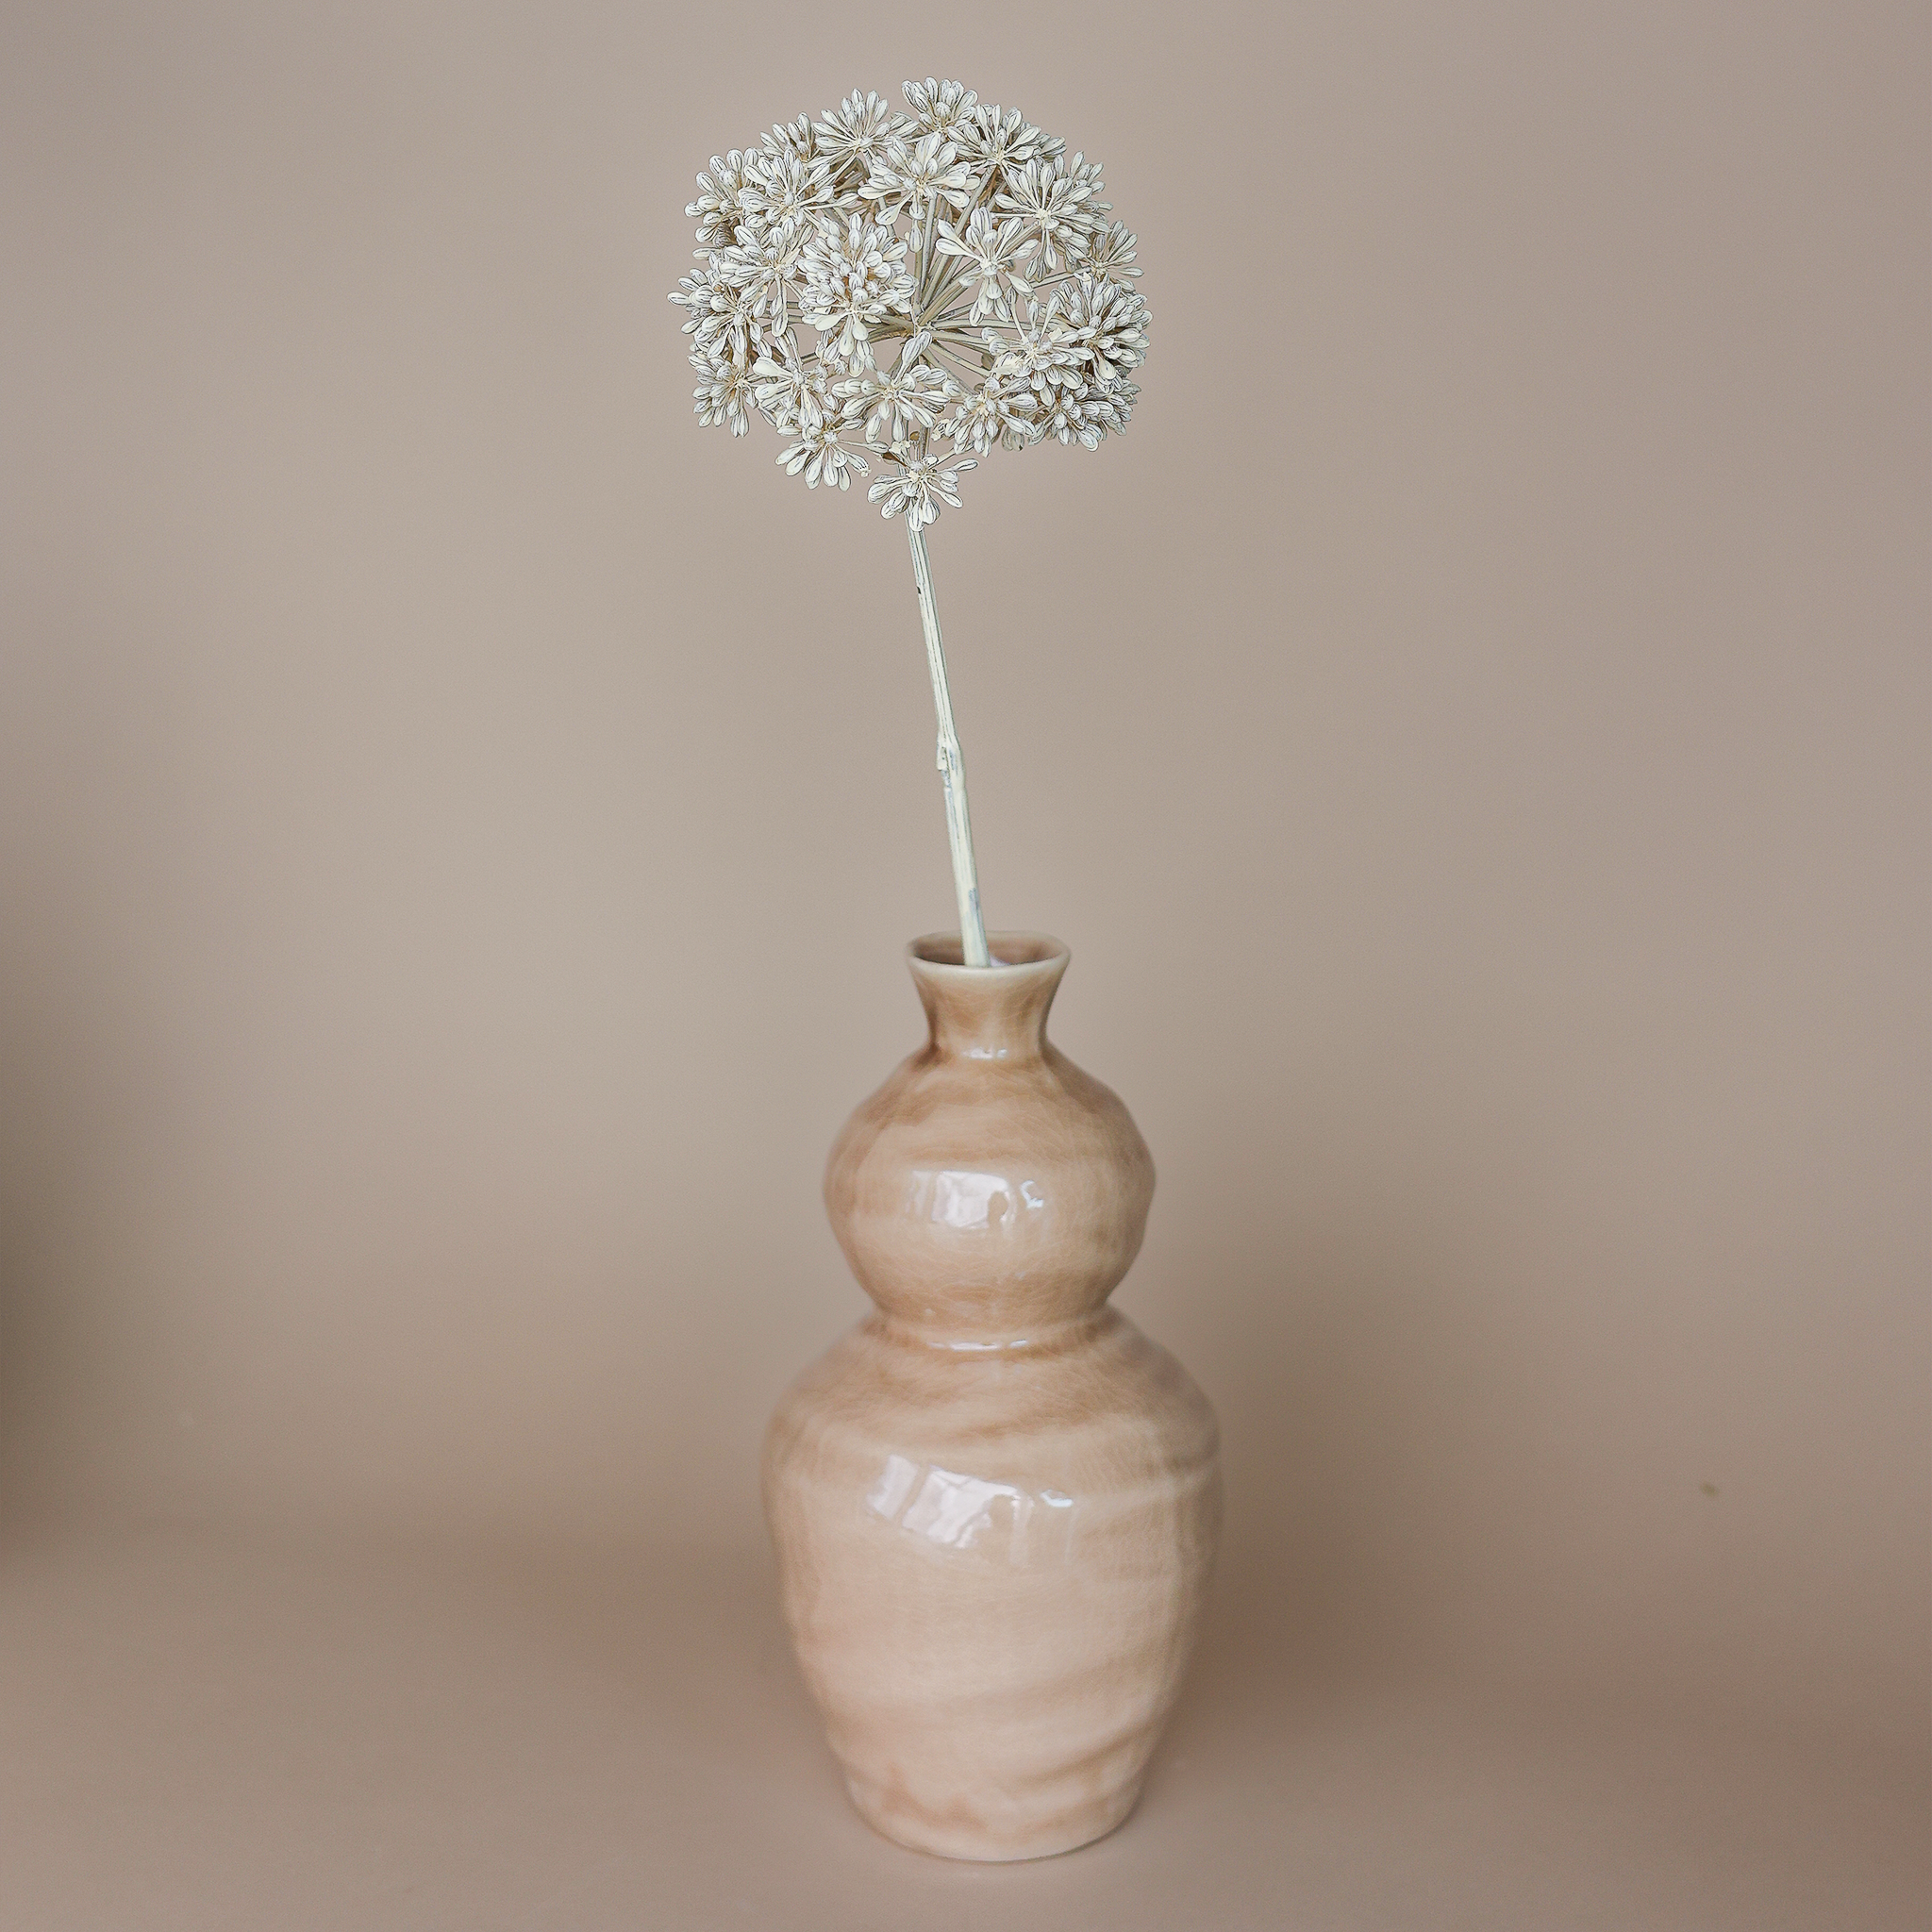 Fritz Set Eukalyptus hellbraun Vase Design & Felipa Blüte – Keramik 14x28cm